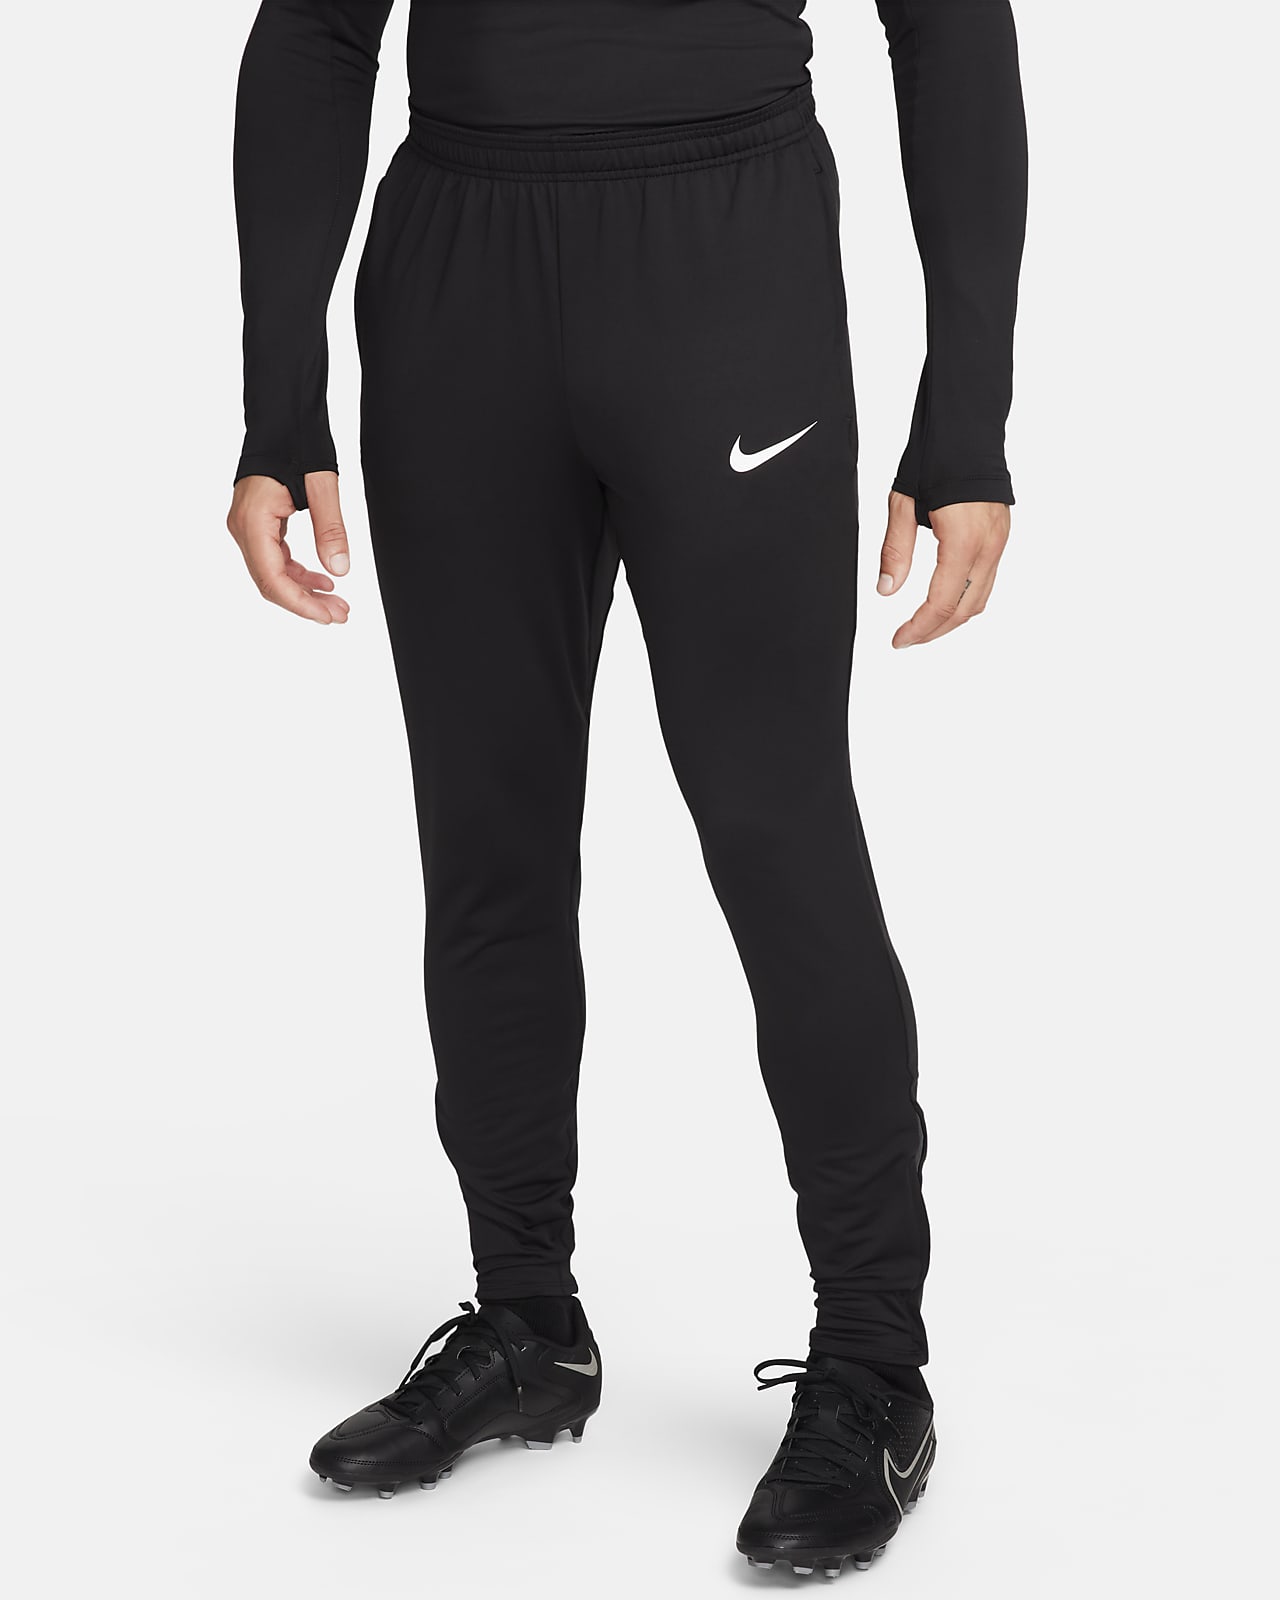 Pants de fútbol Dri-FIT para hombre Nike Strike